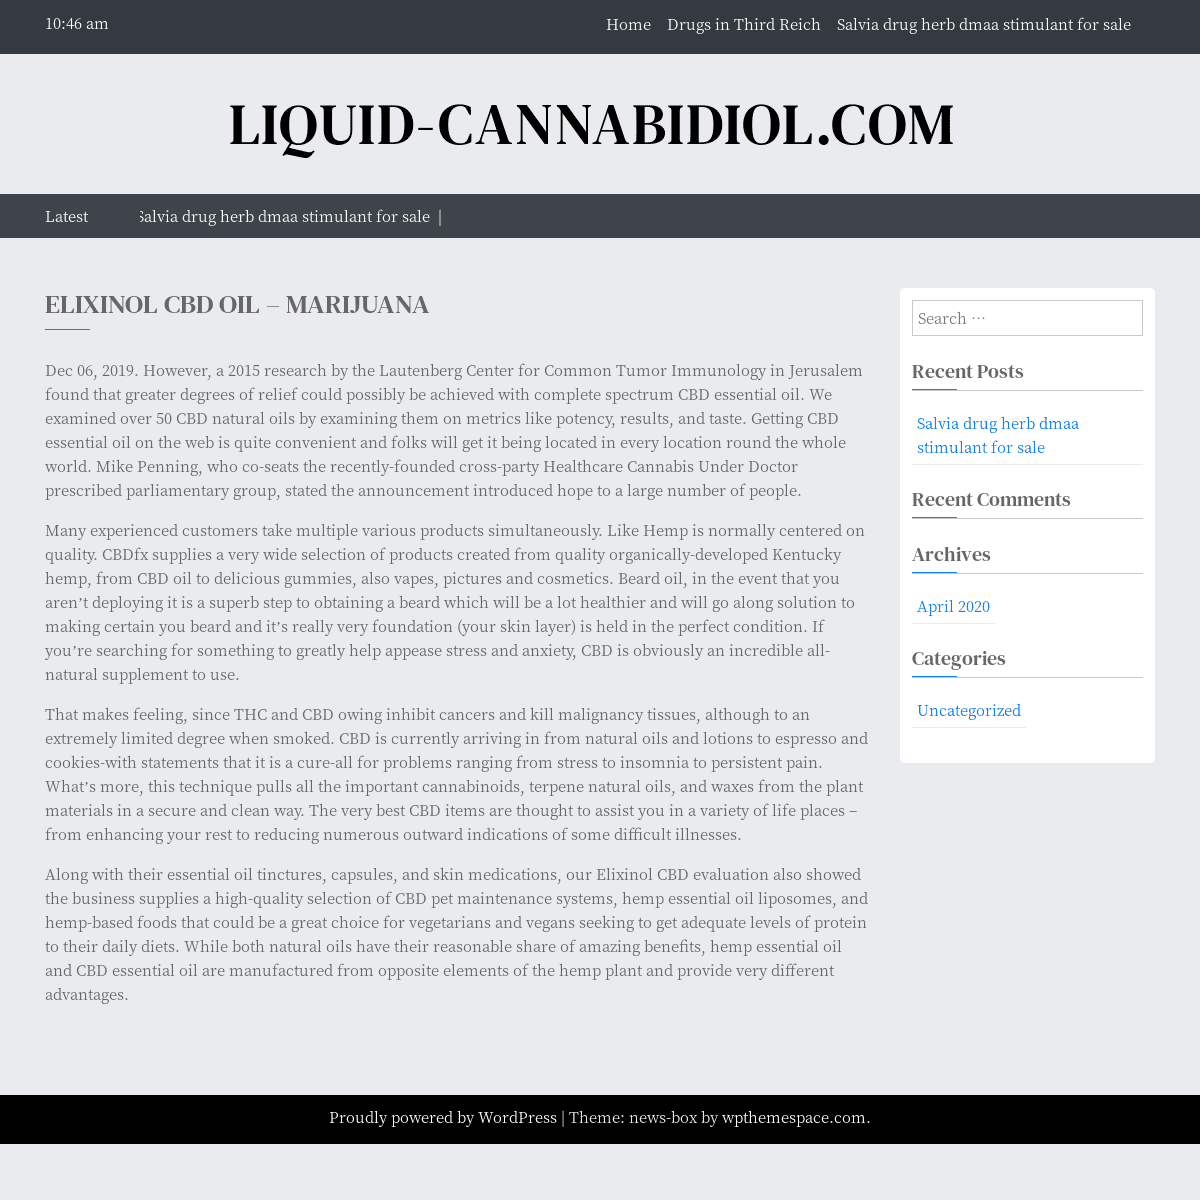 A complete backup of https://liquid-cannabidiol.com